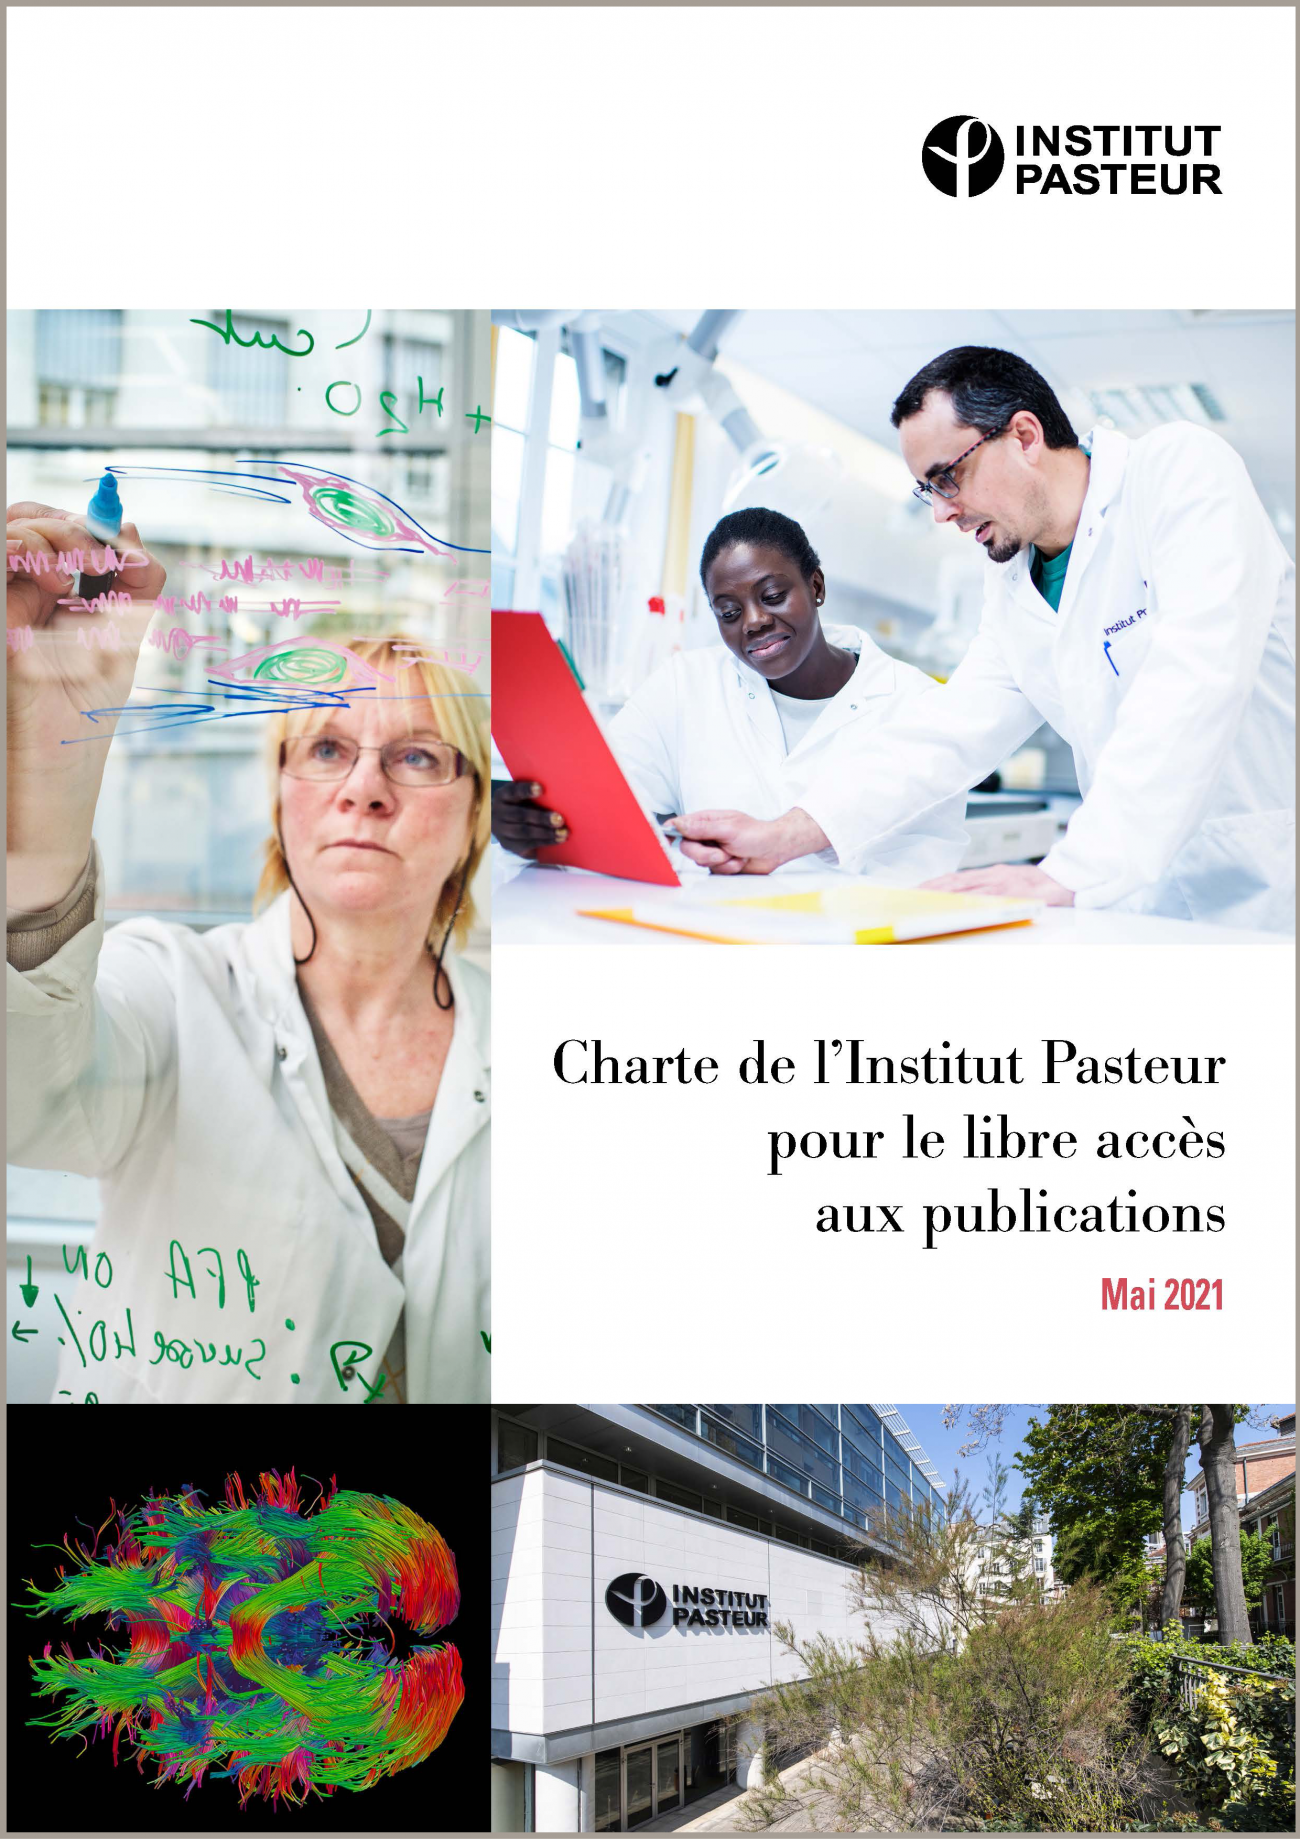 Institut Pasteur - Charte pour le libre accès aux publications